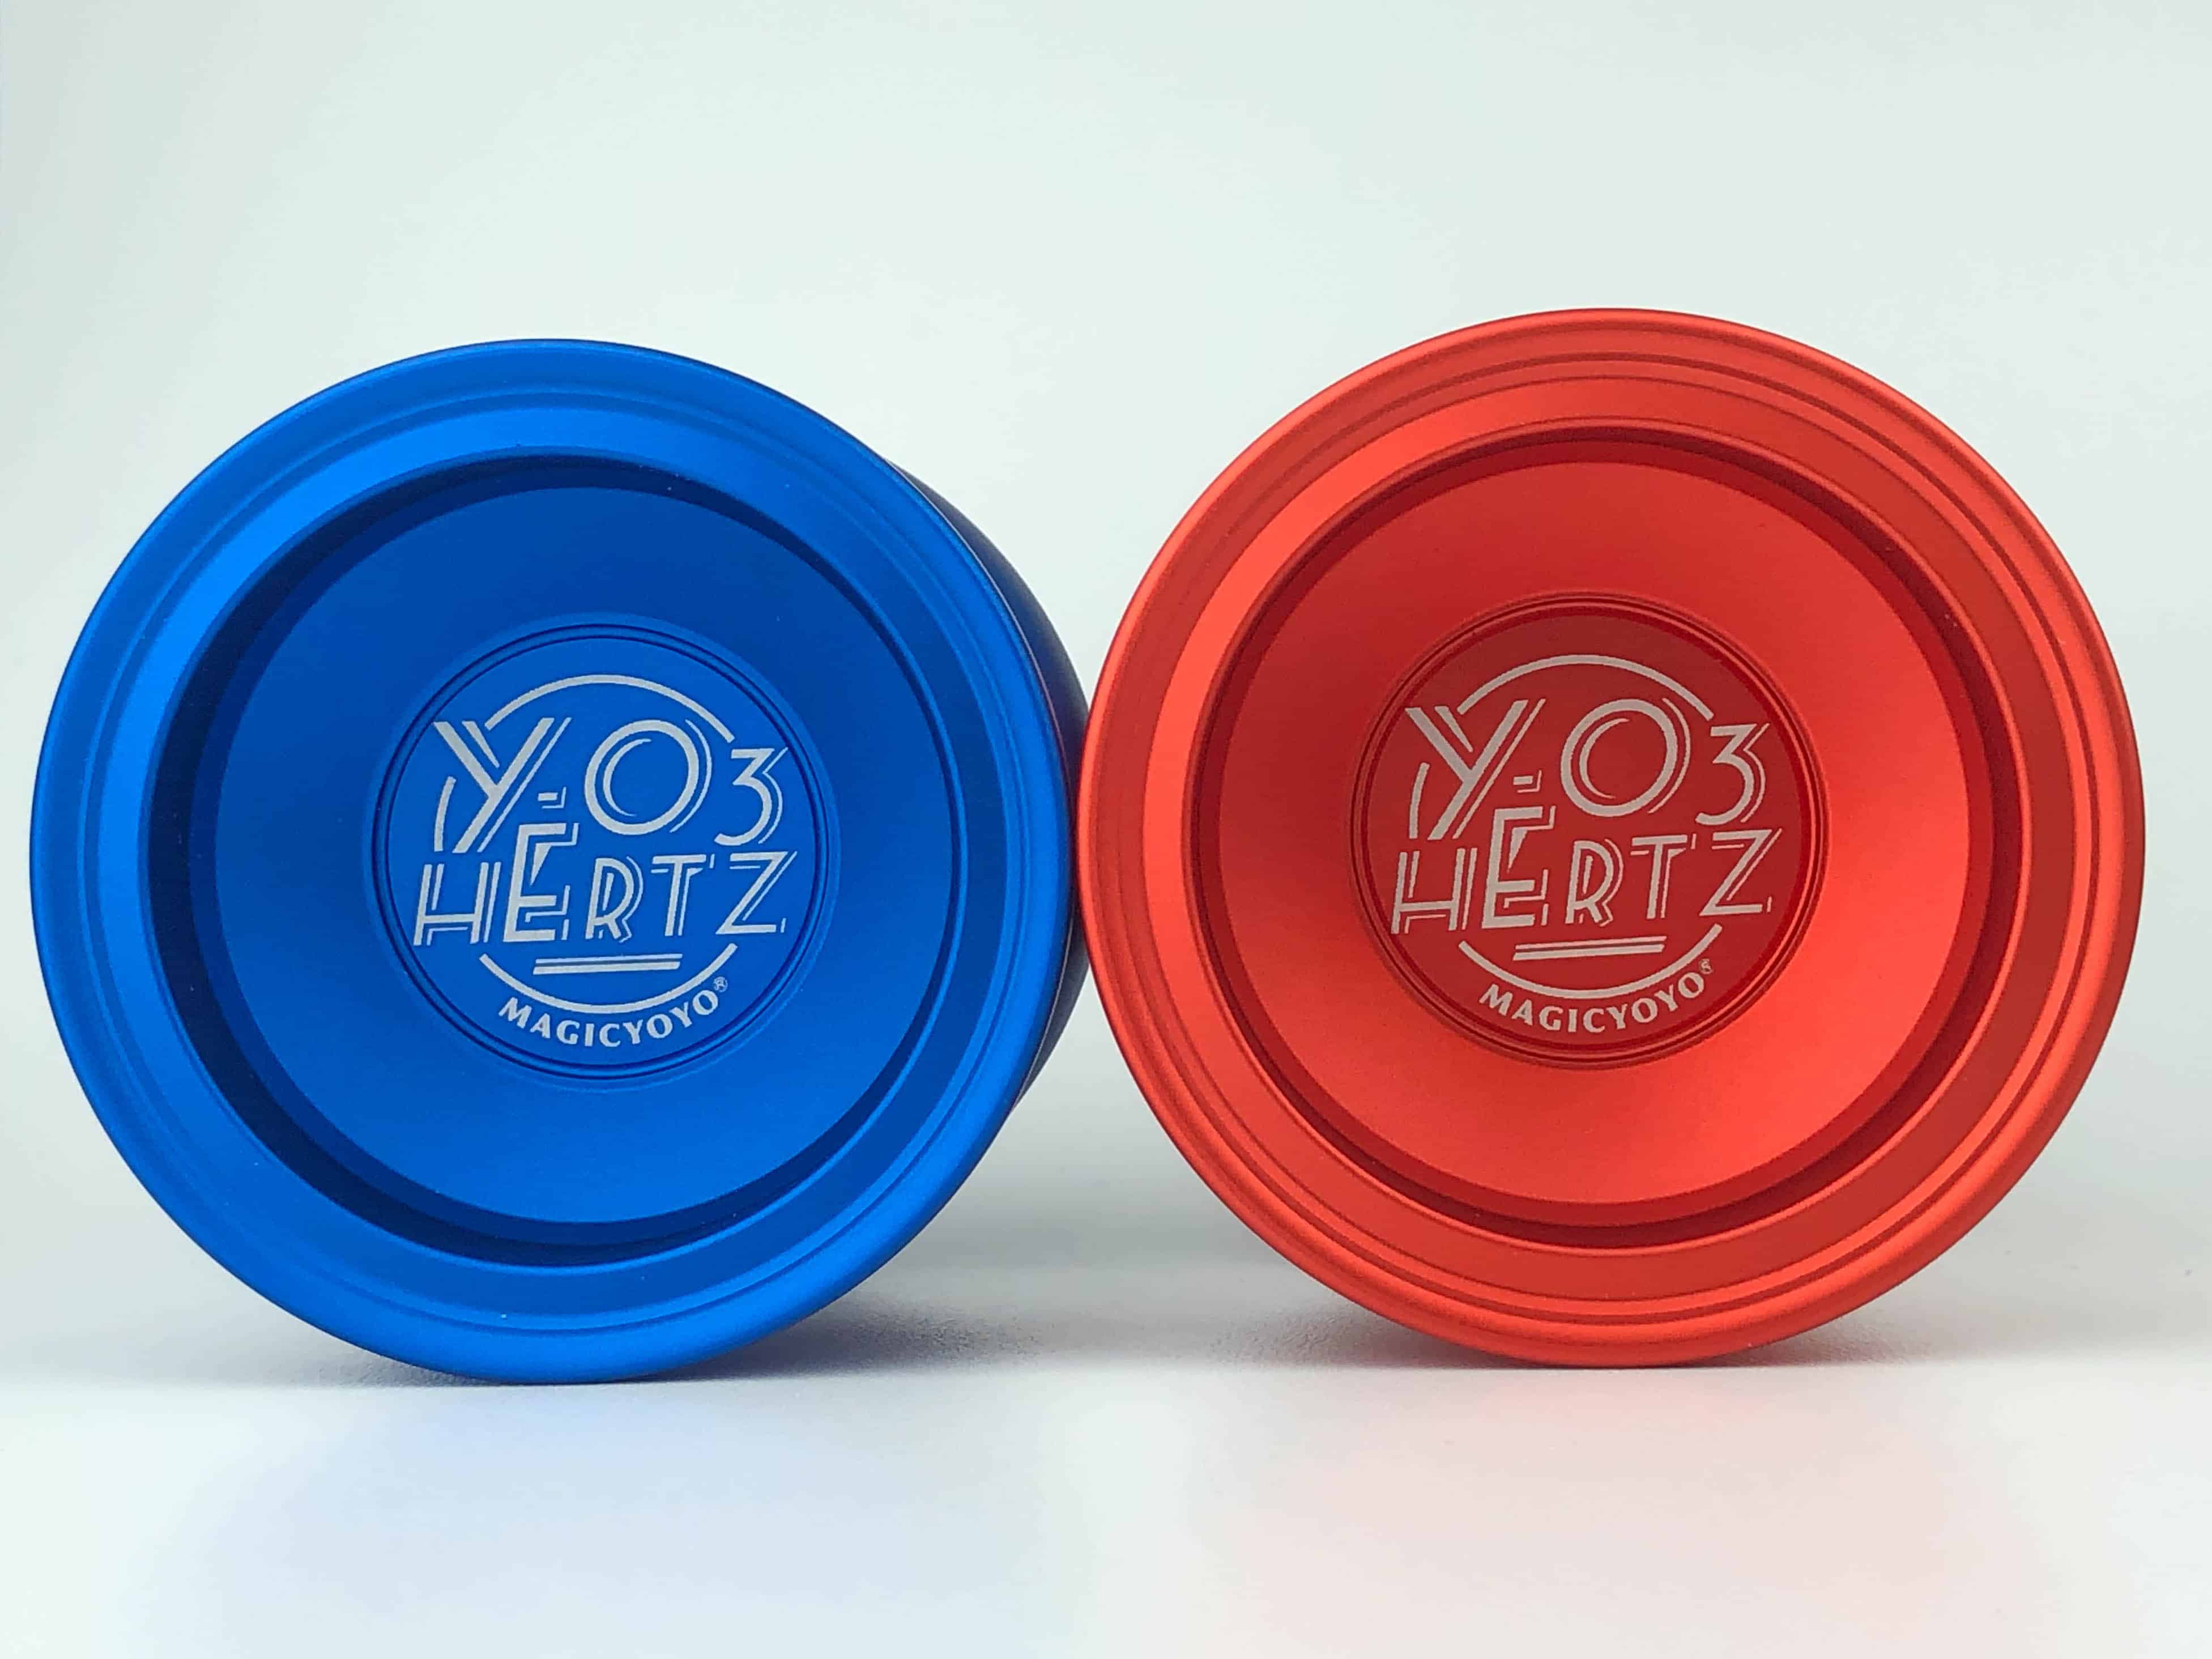 Magic YoYo YO3 Hertz - Blue and Orange colors at Yo-Yo.gr